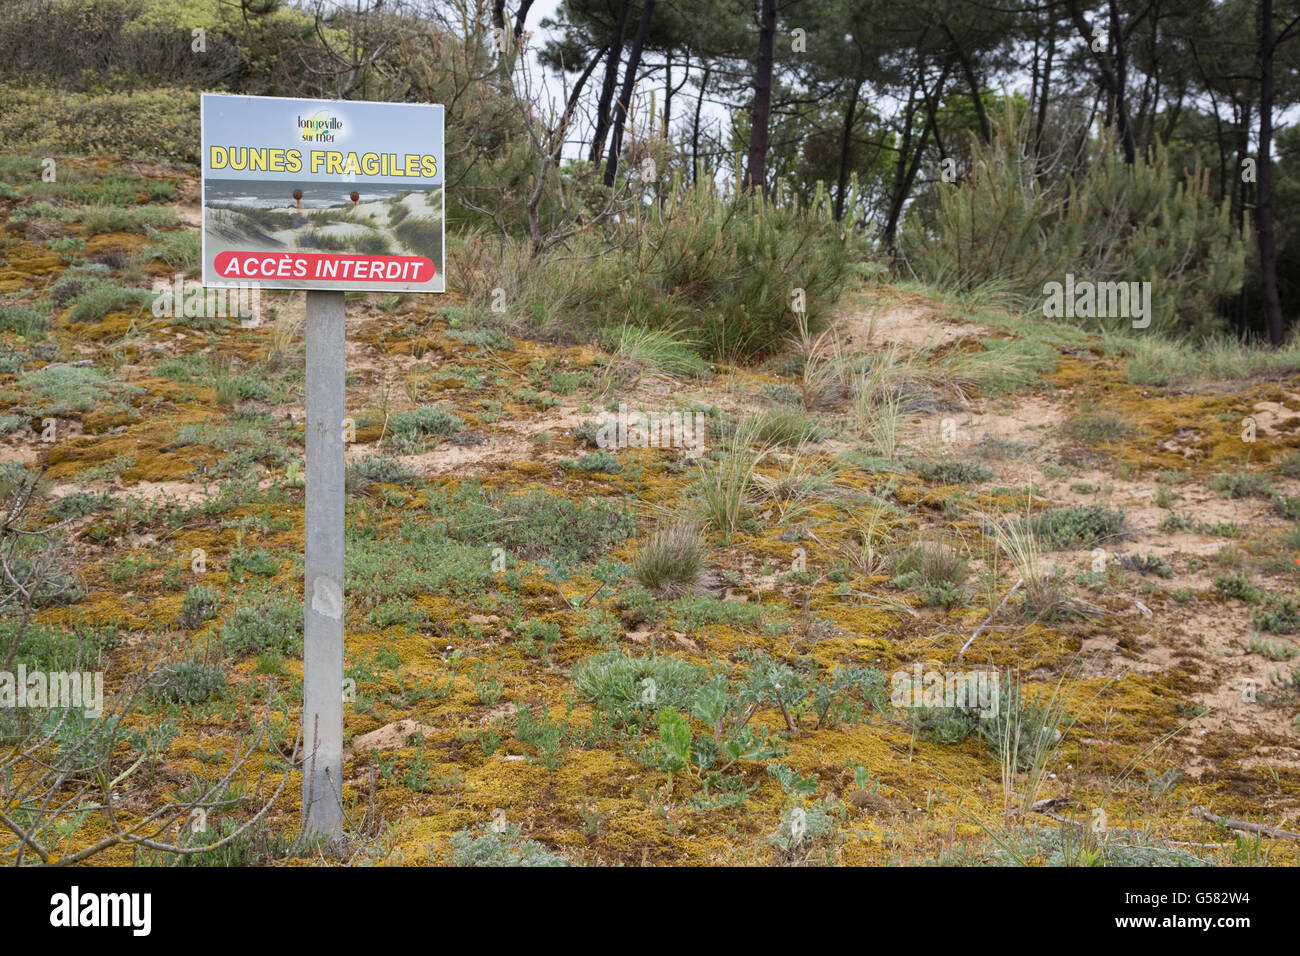 Dunes de sable fragile signer aucun accès Longeville-sur-Mer France Banque D'Images